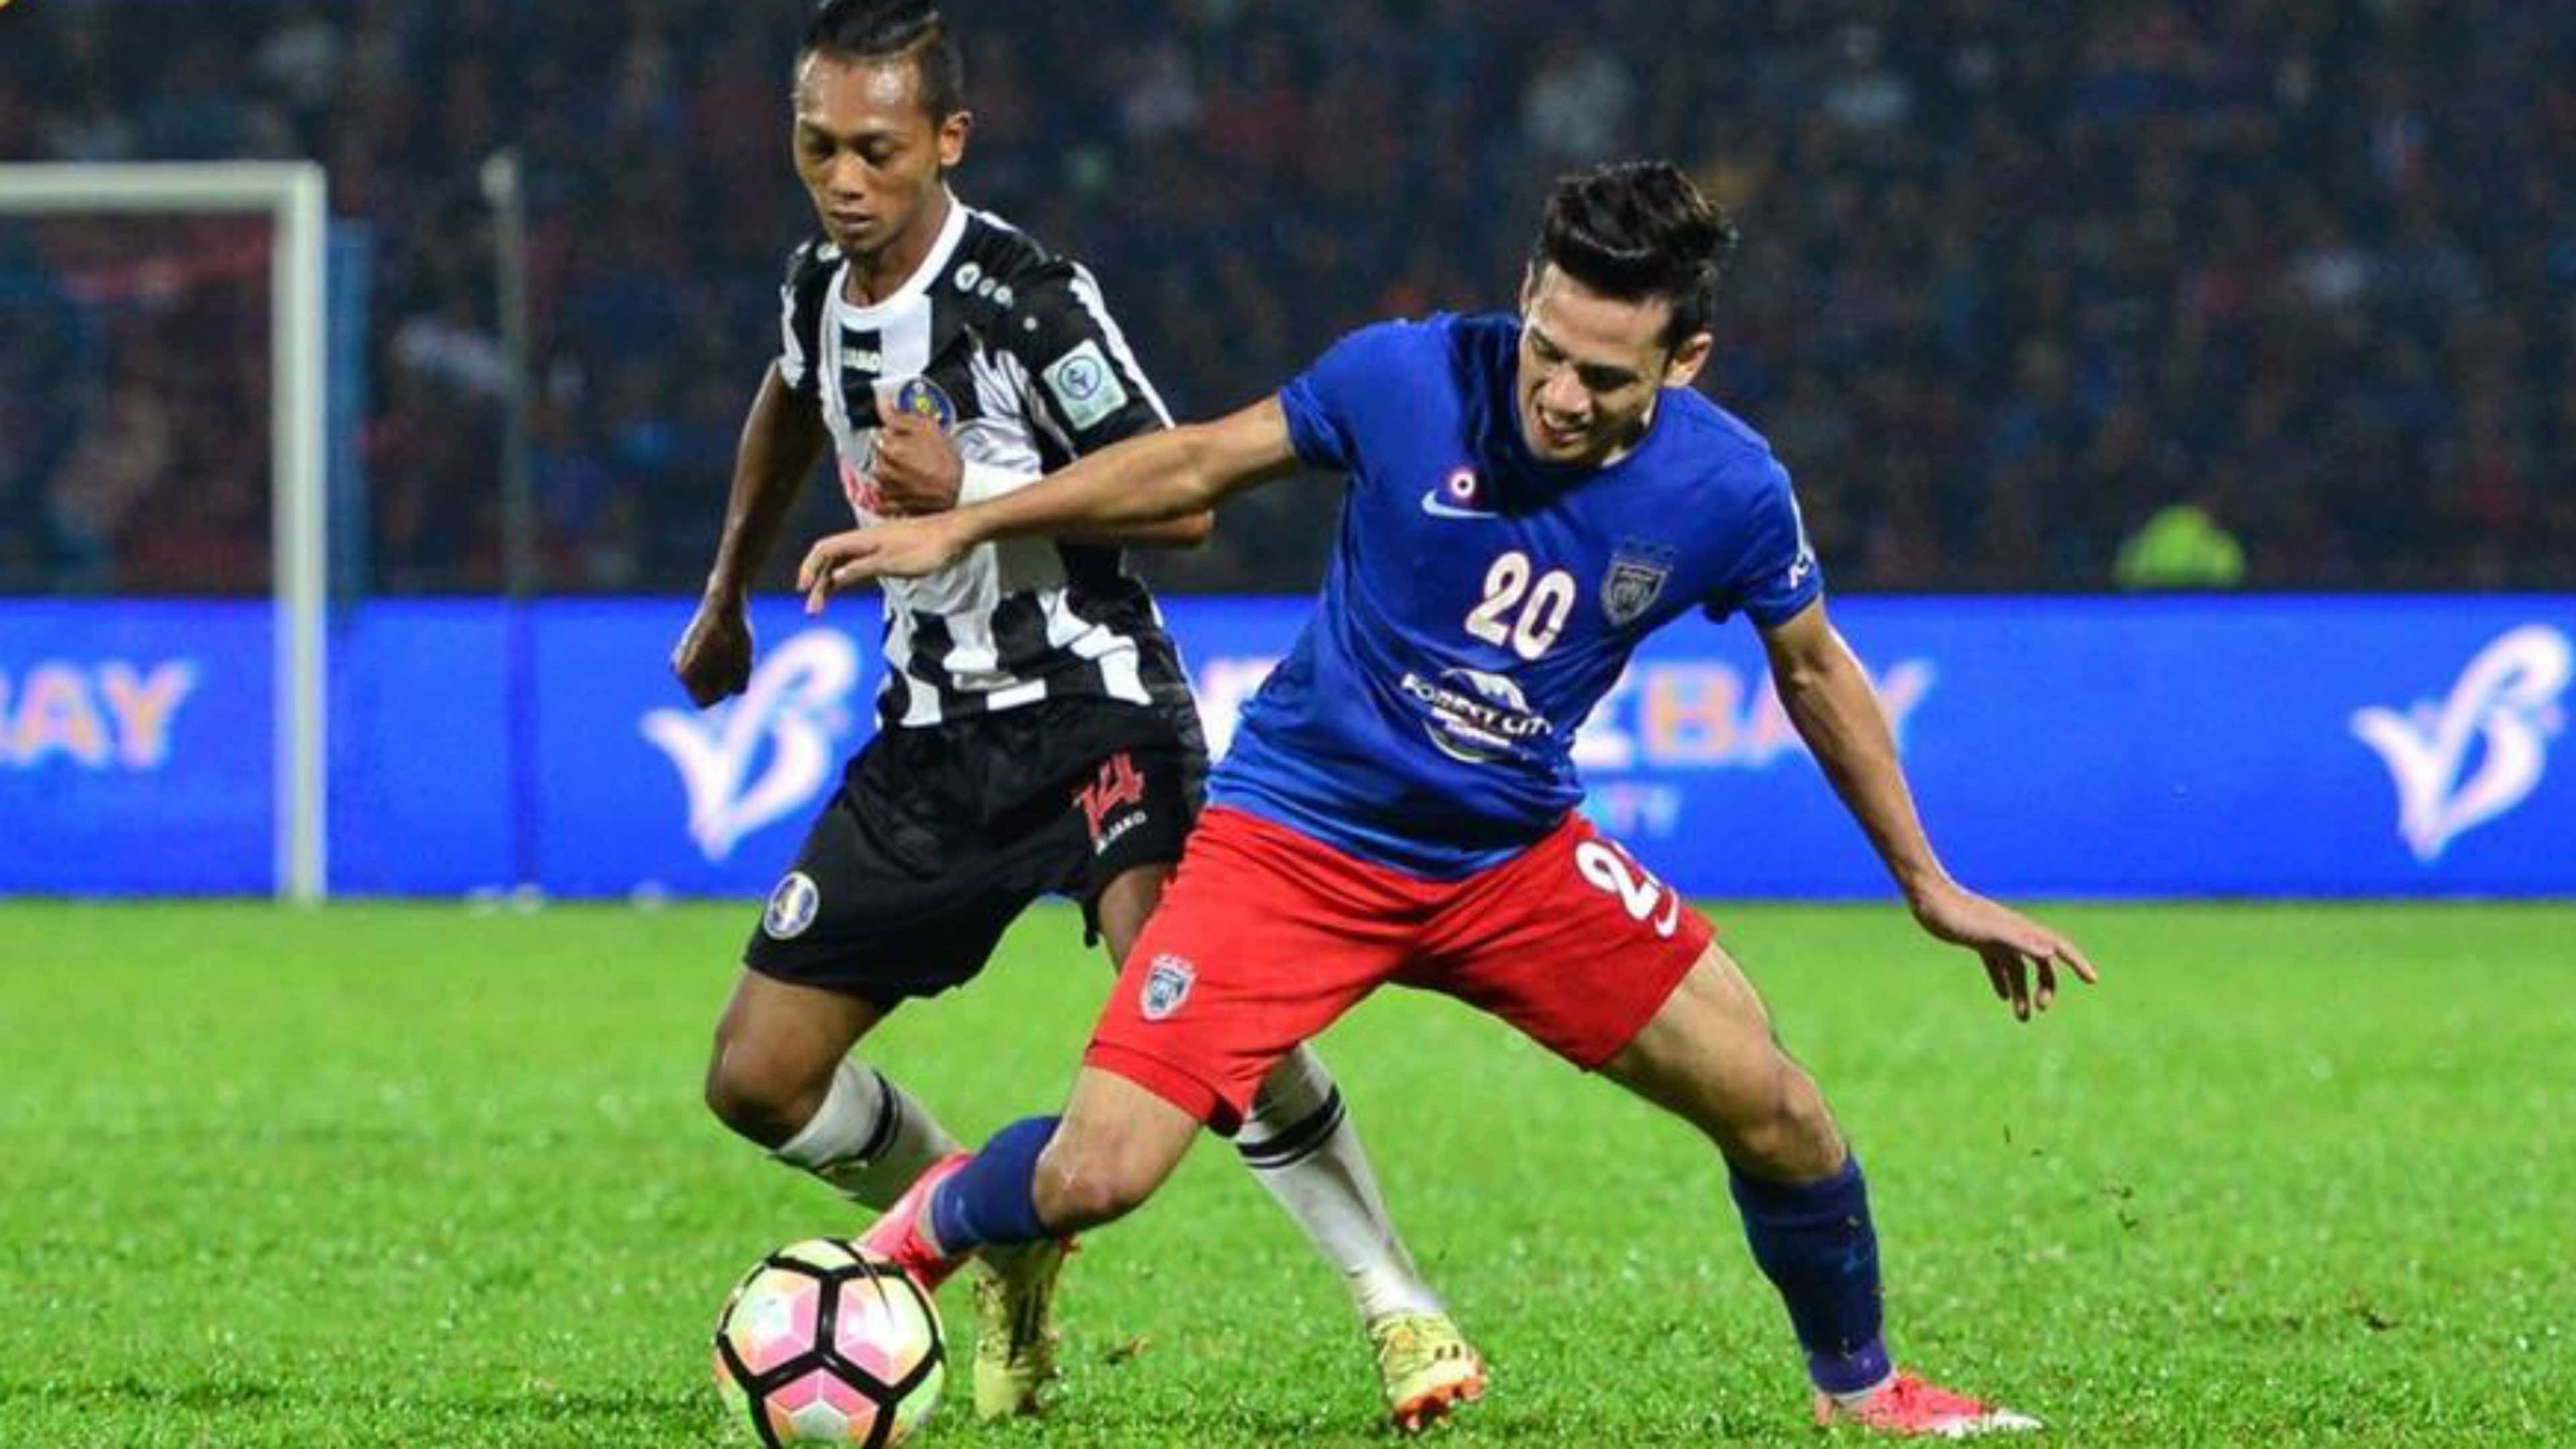 Azrif Nasrulhaq, Johor Darul Ta'zim, Faizal Rosli, Pahang, FA Cup, 23/04/2017